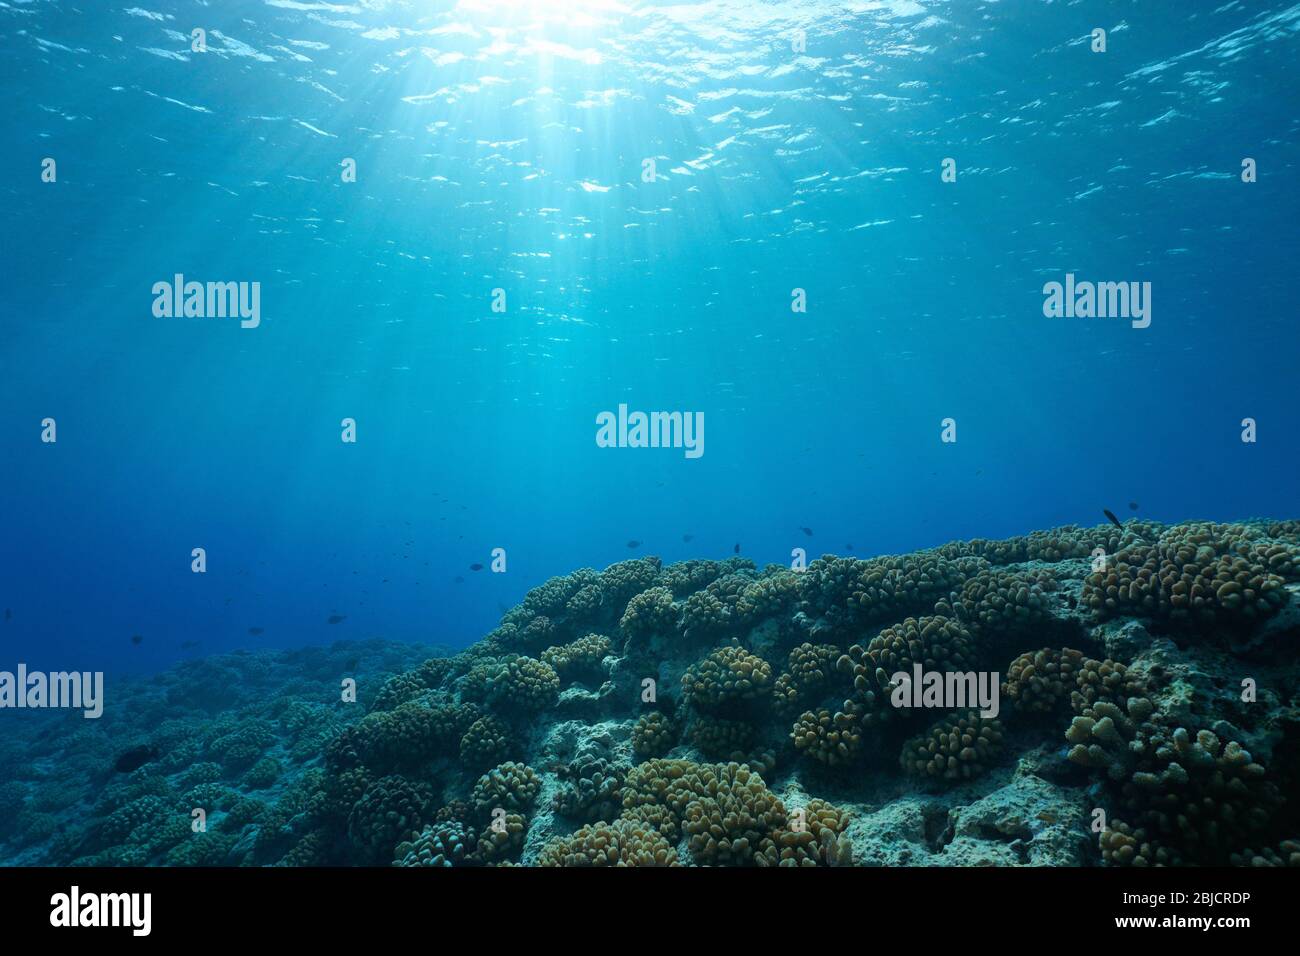 Mare subacqueo, luce del sole attraverso la superficie dell'acqua con barriera corallina sul pavimento dell'oceano, scenario naturale, oceano Pacifico, Polinesia francese Foto Stock